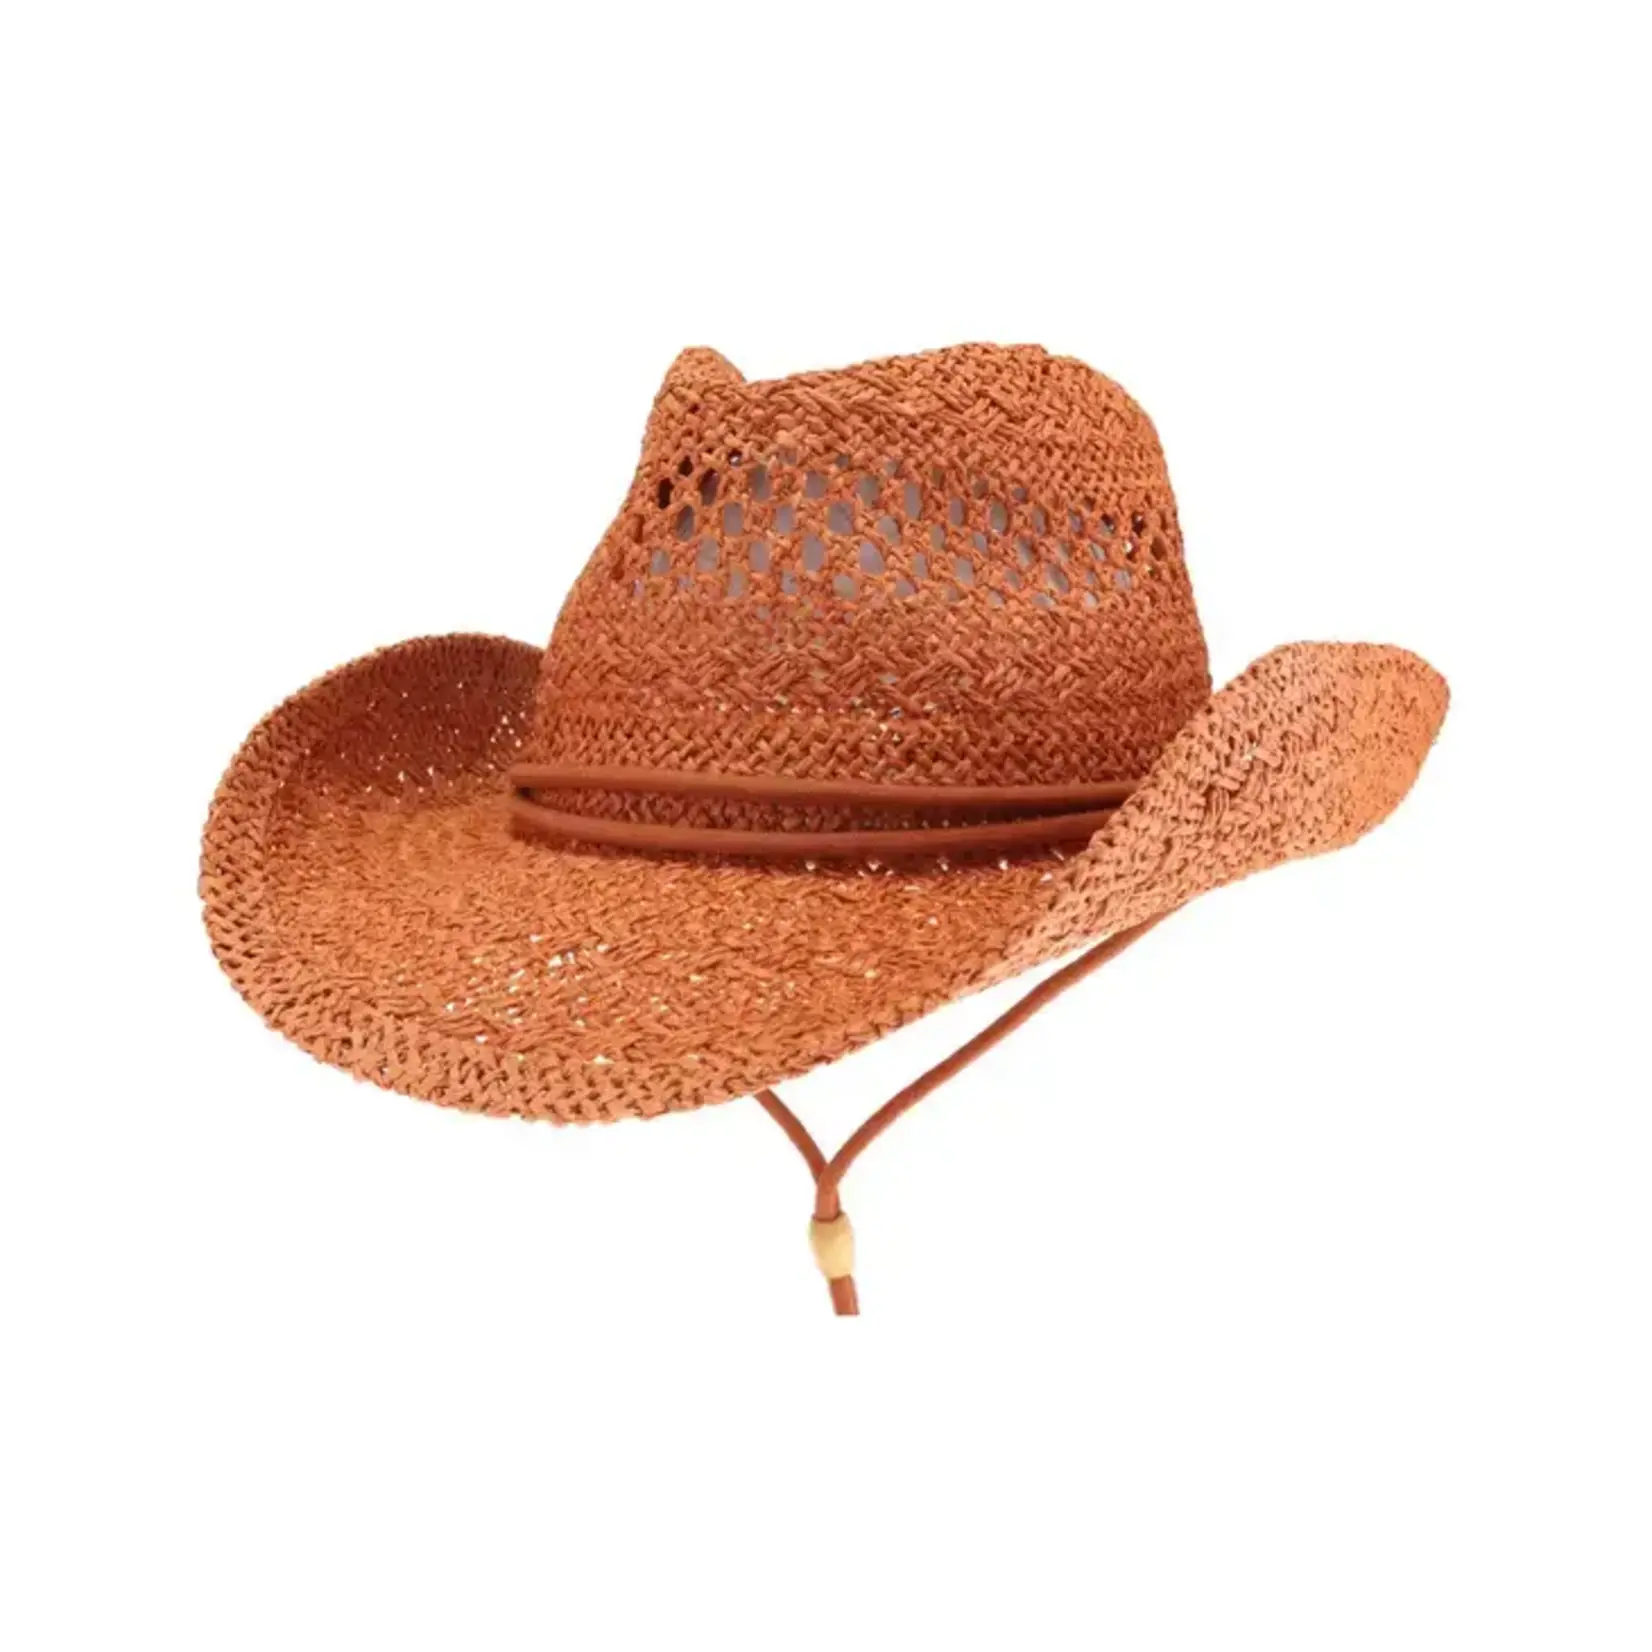 Amarillo Cowboy Hat